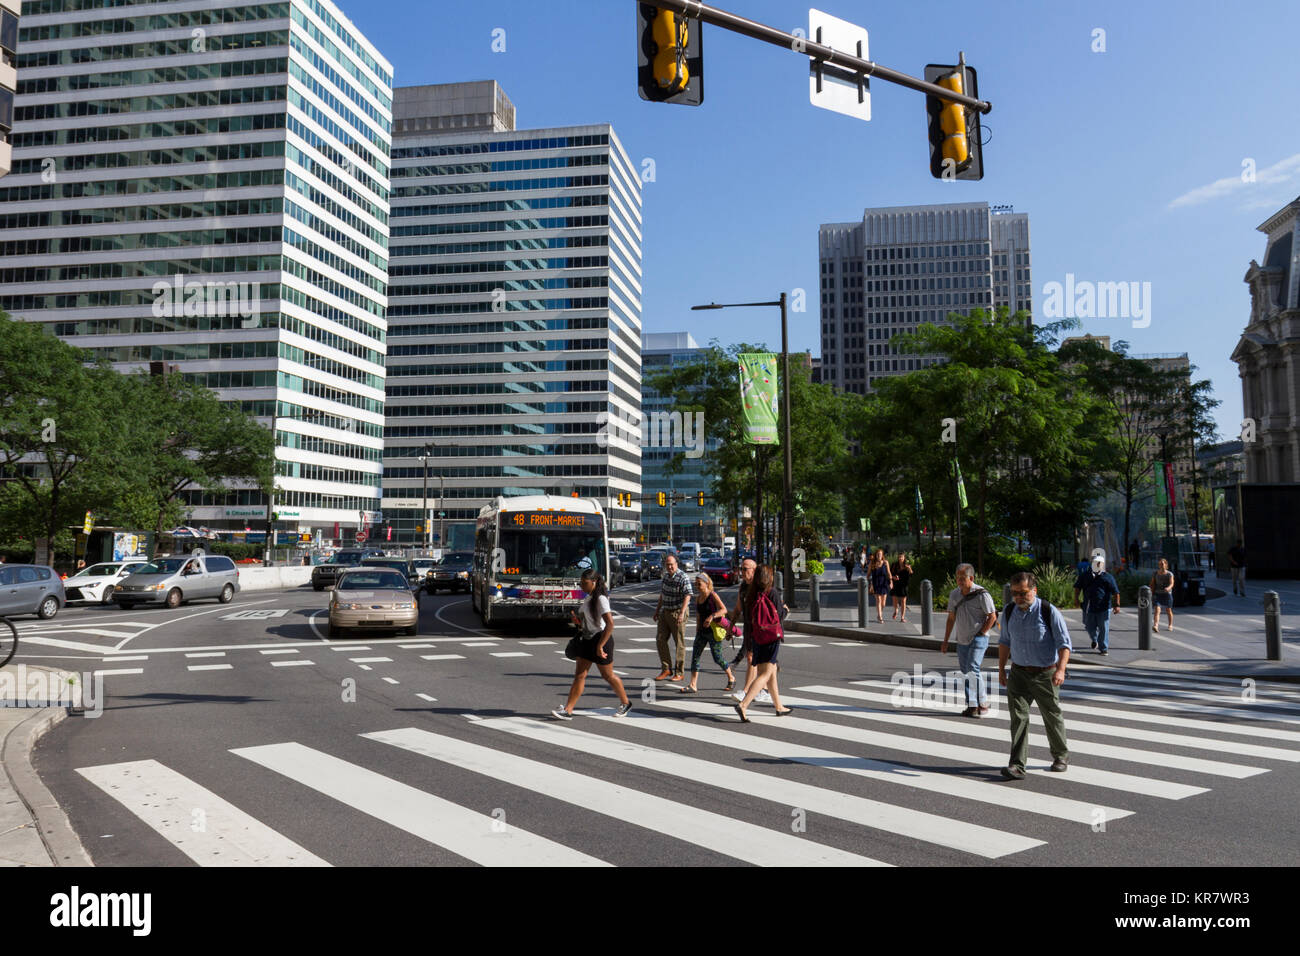 Vue générale d'un franchissement routier au centre-ville de Philadelphie, Pennsylvanie, États-Unis. Banque D'Images